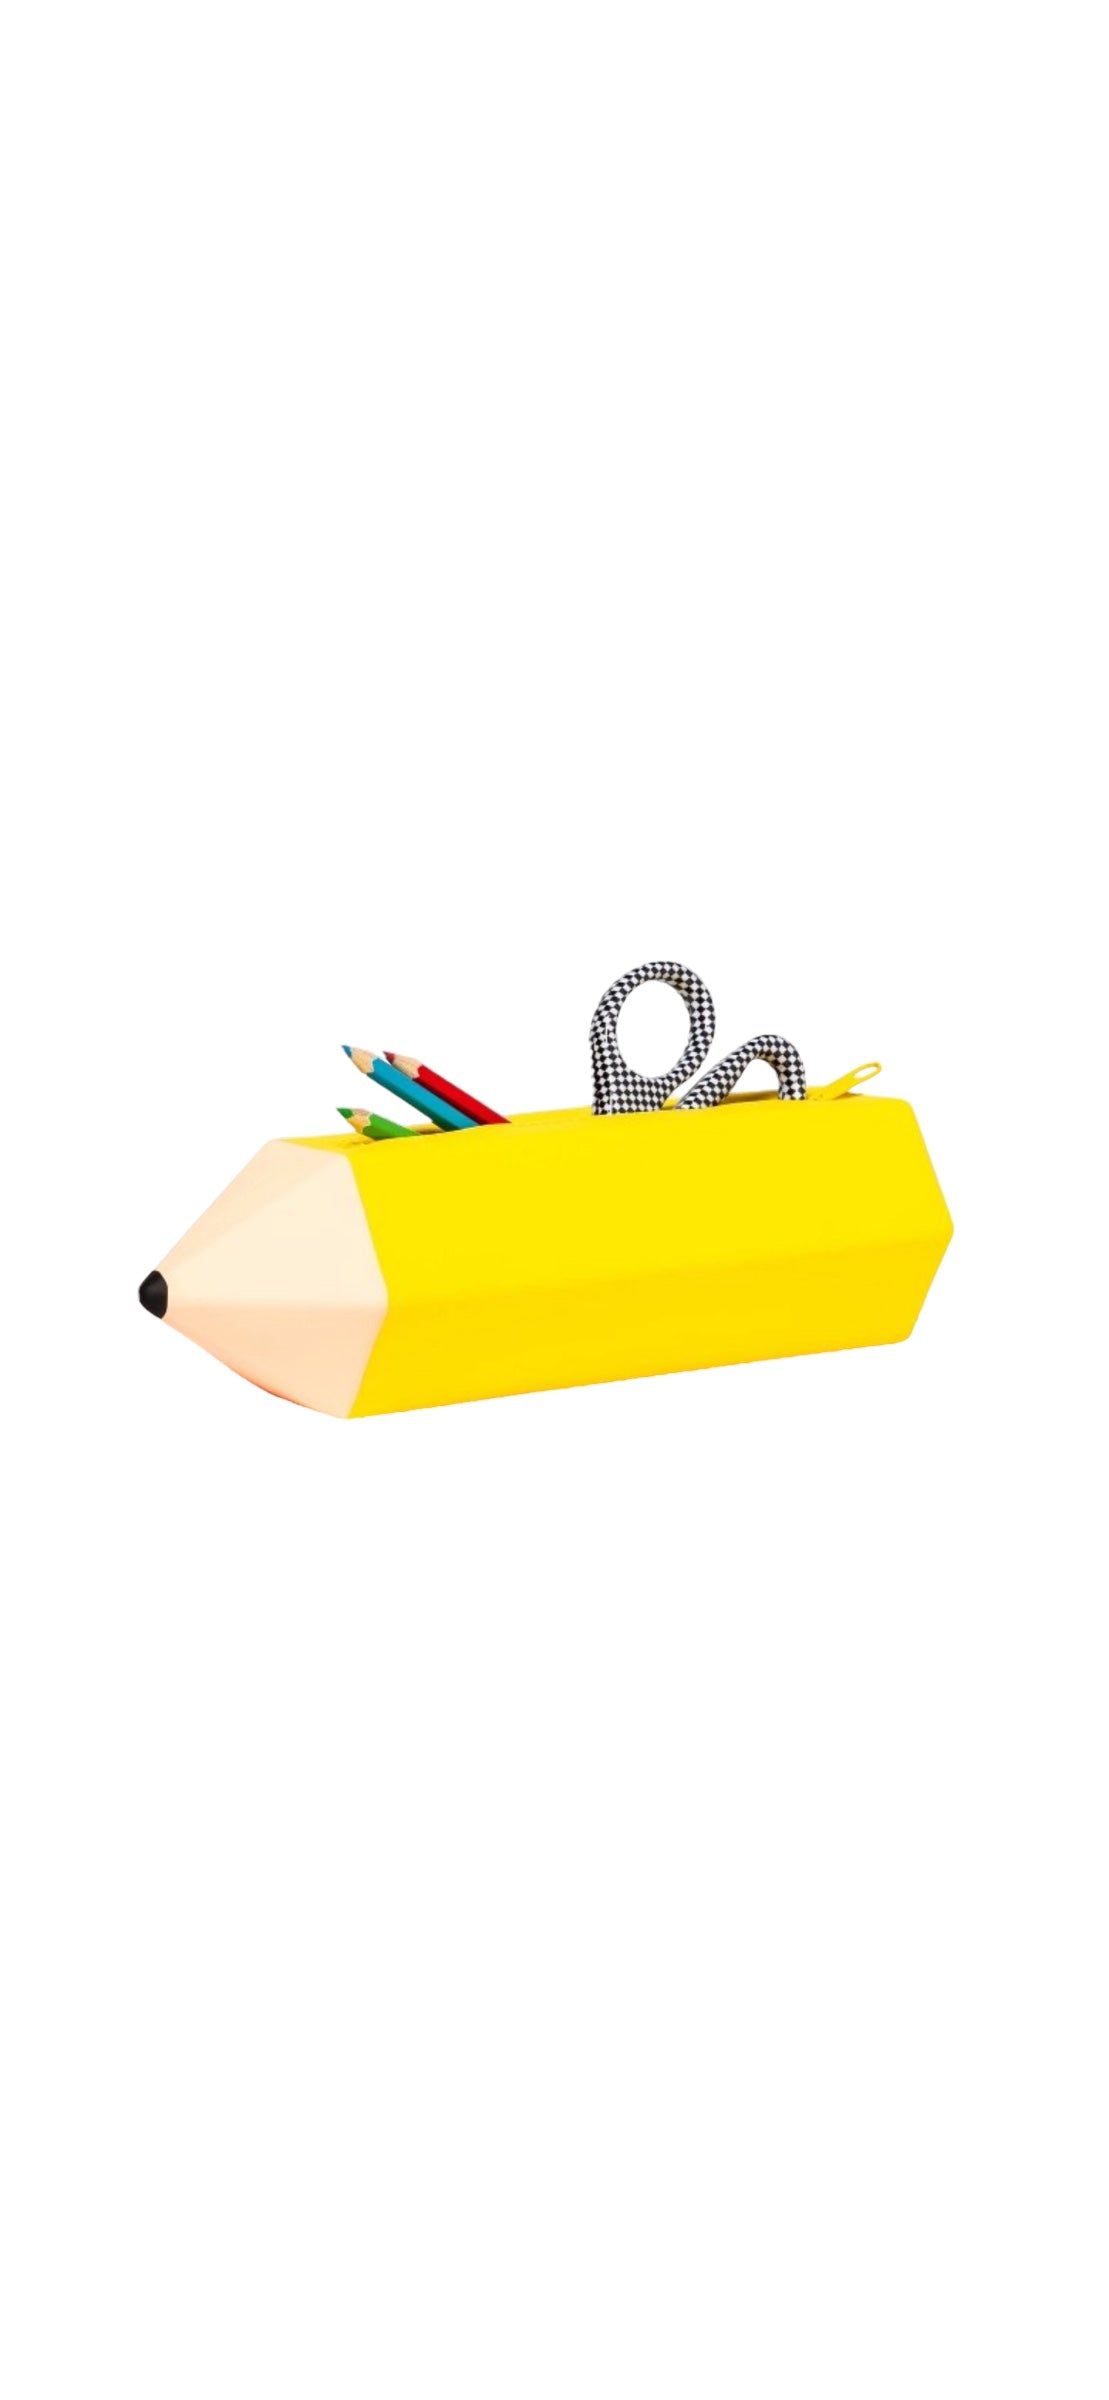 Personalized Pencil Case - Crayon or Pencil